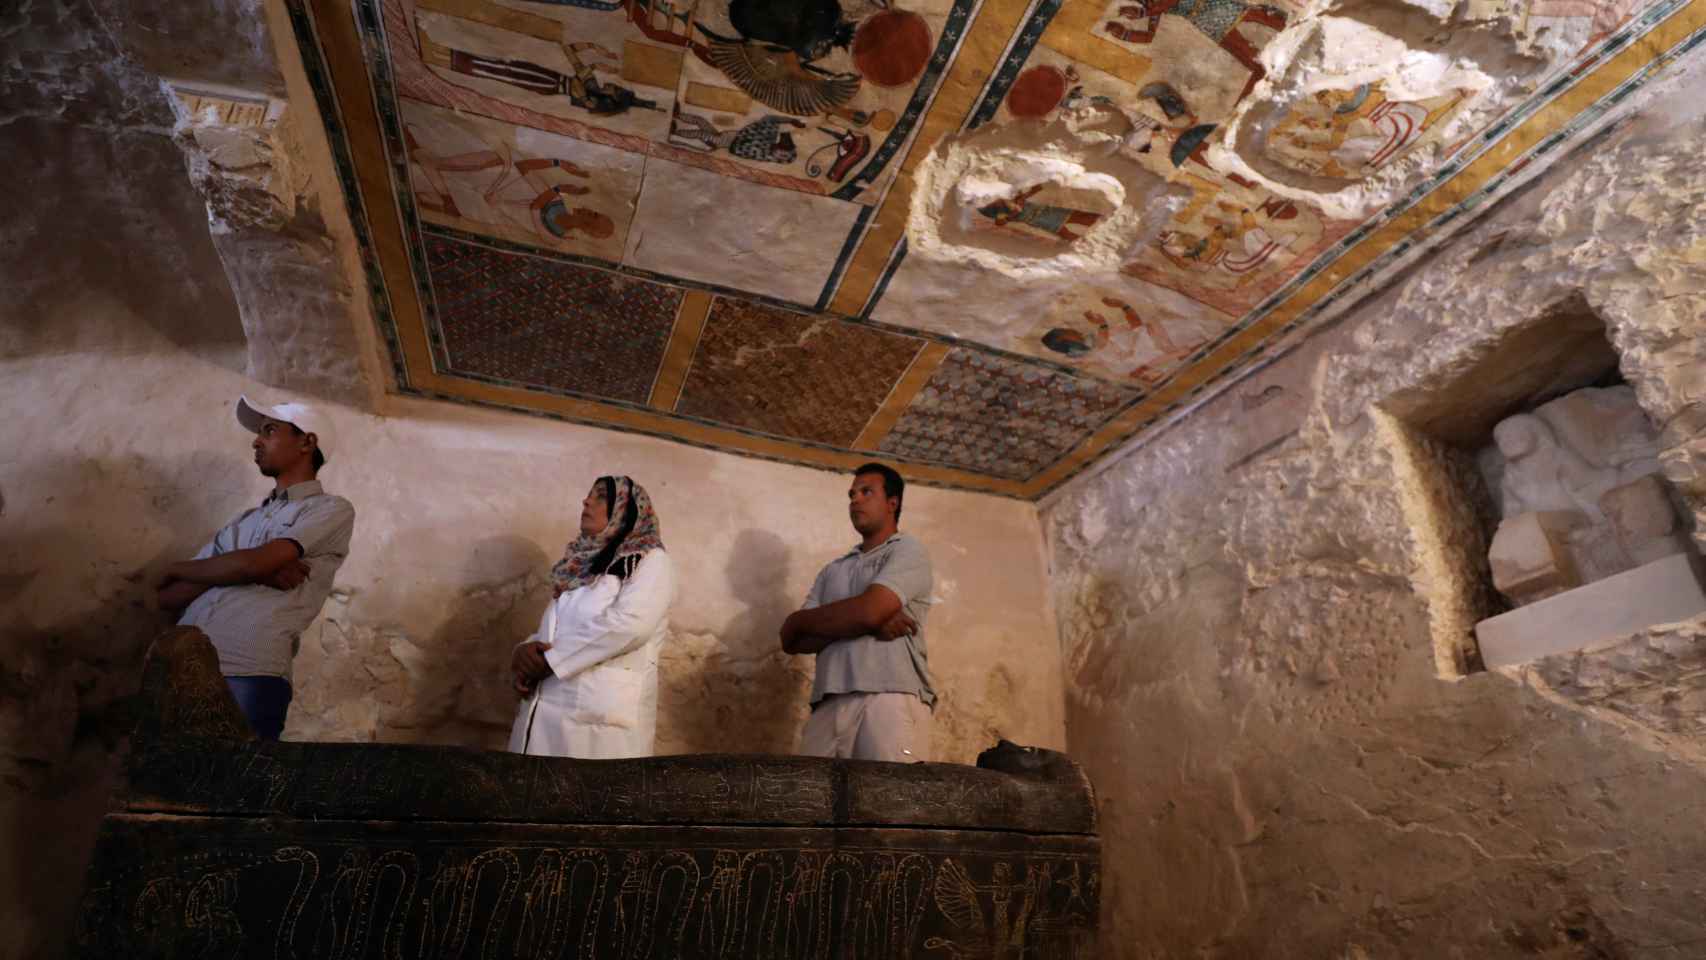 Pintadas en el techo de la tumba en la que se ha hallado la momia.